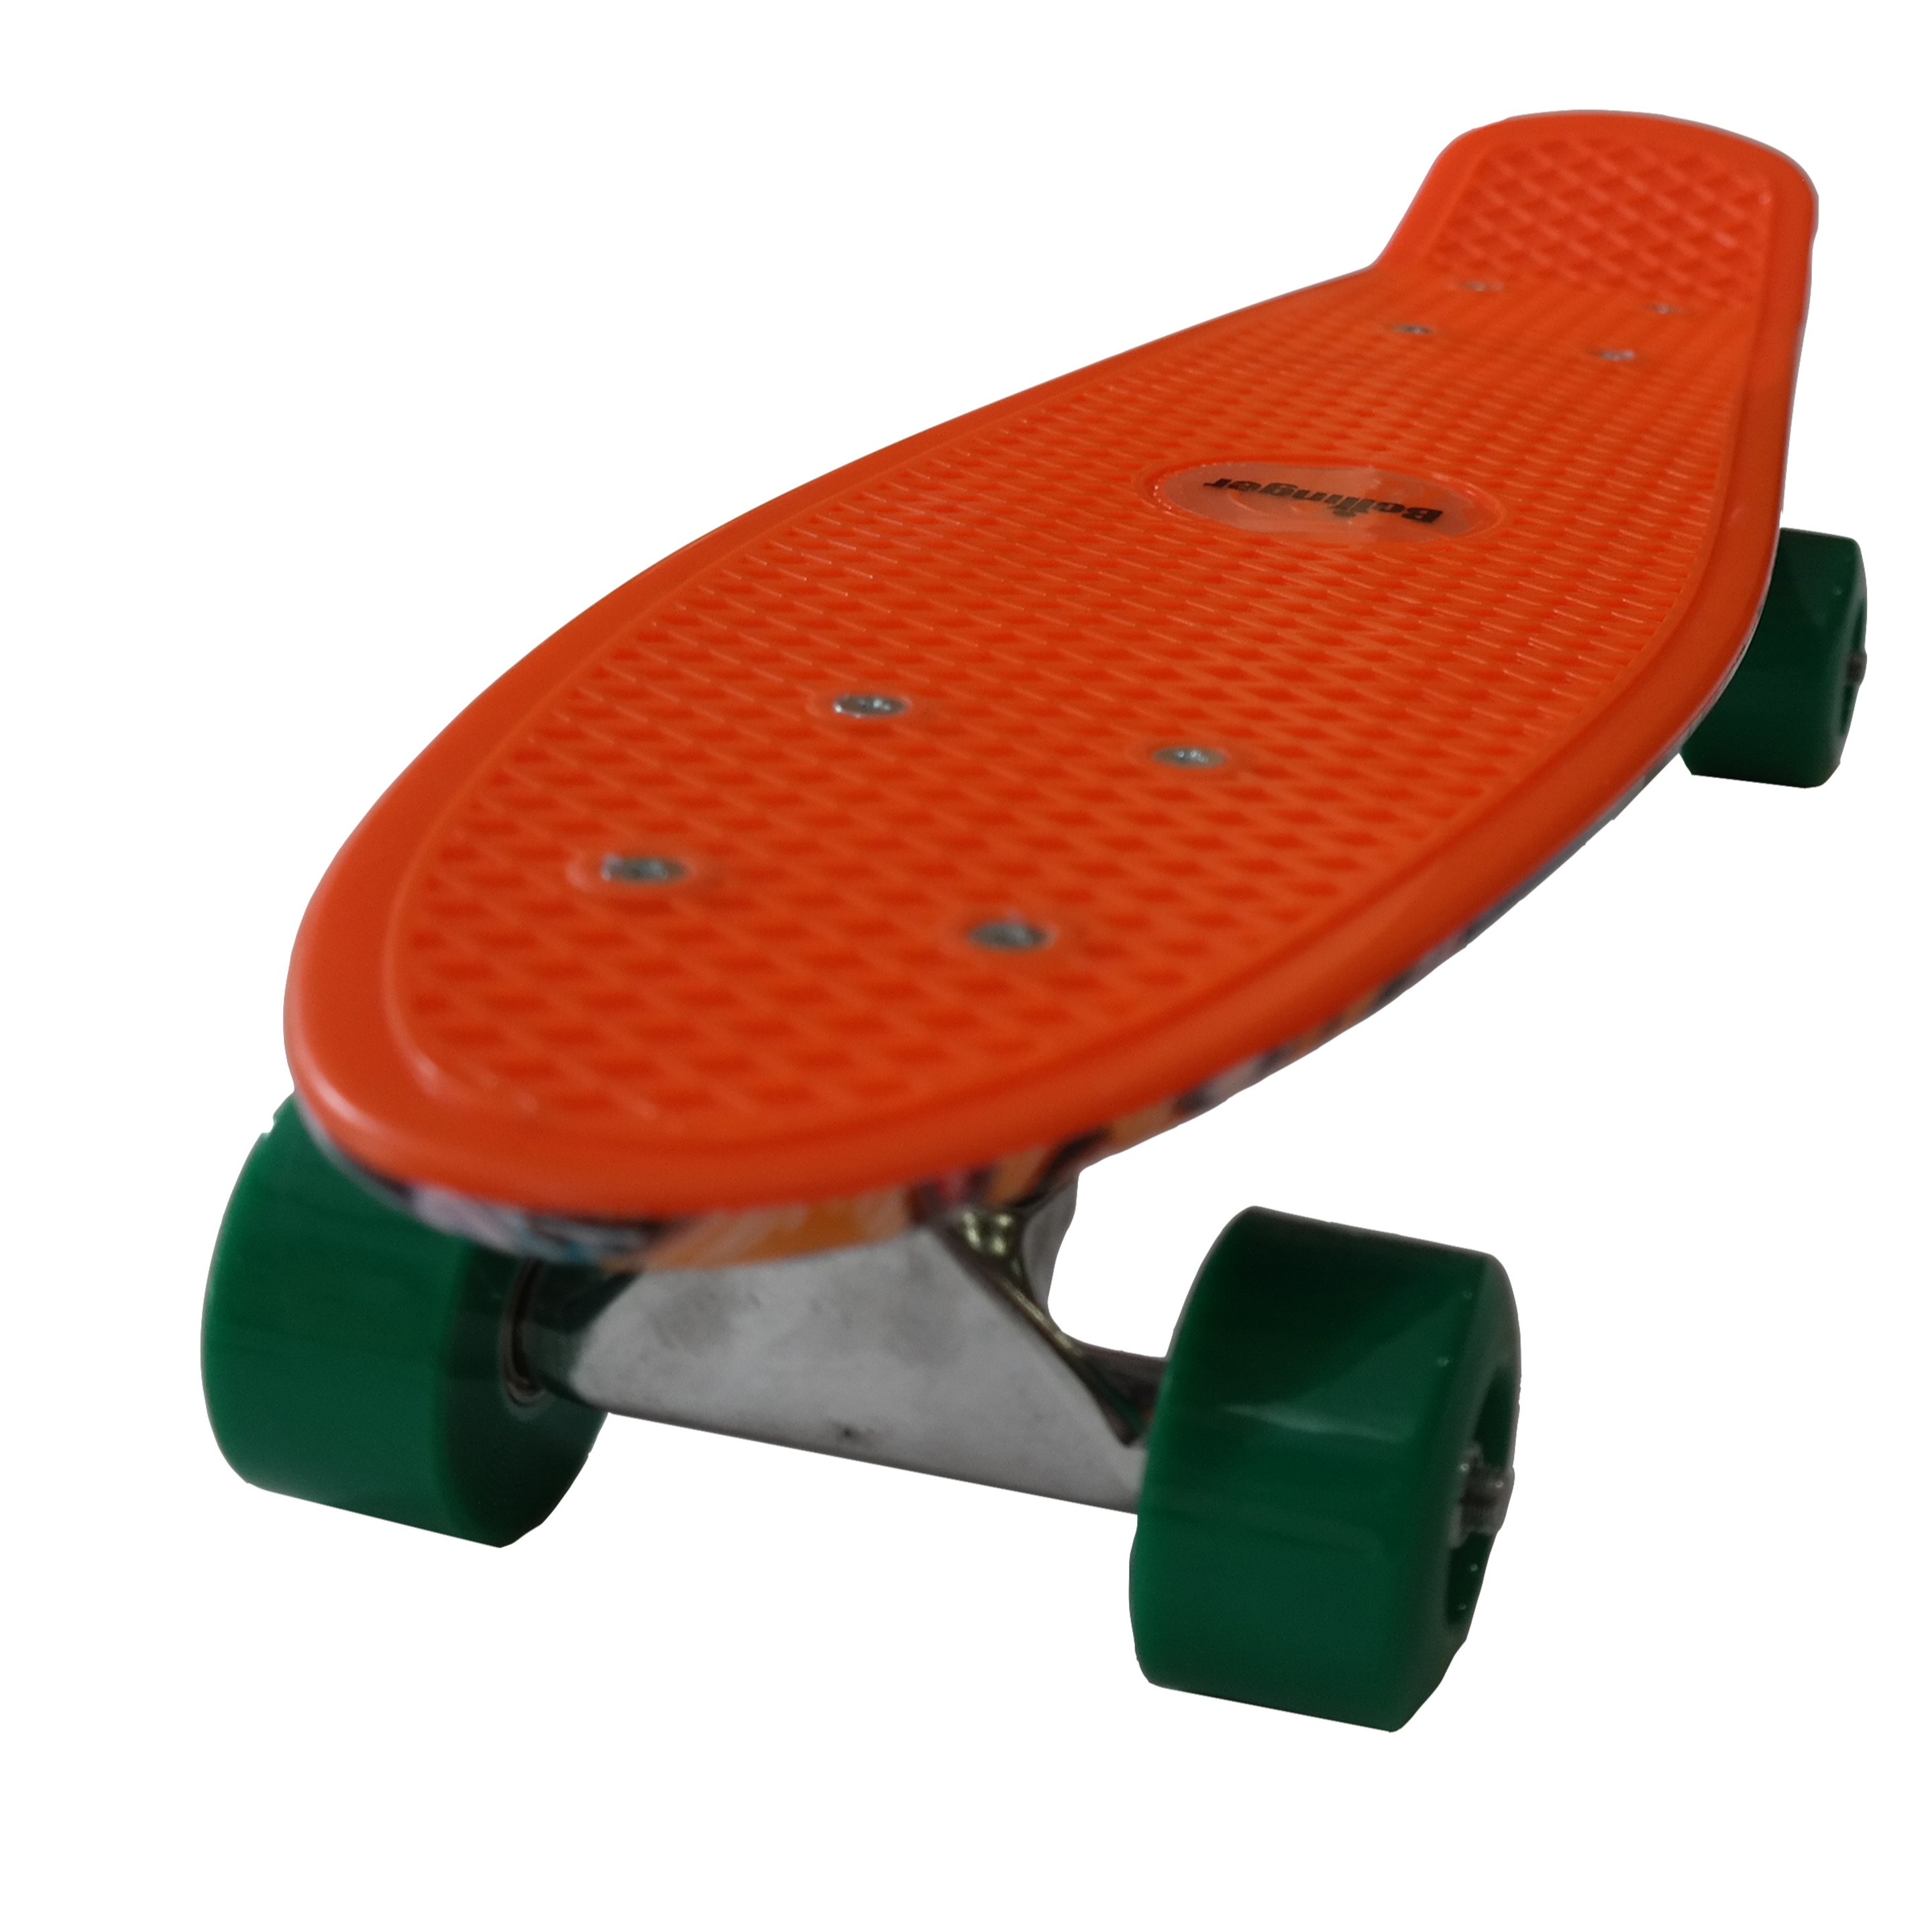 Tabla Skate Bollinger Penny Board Con Graficos Naranja